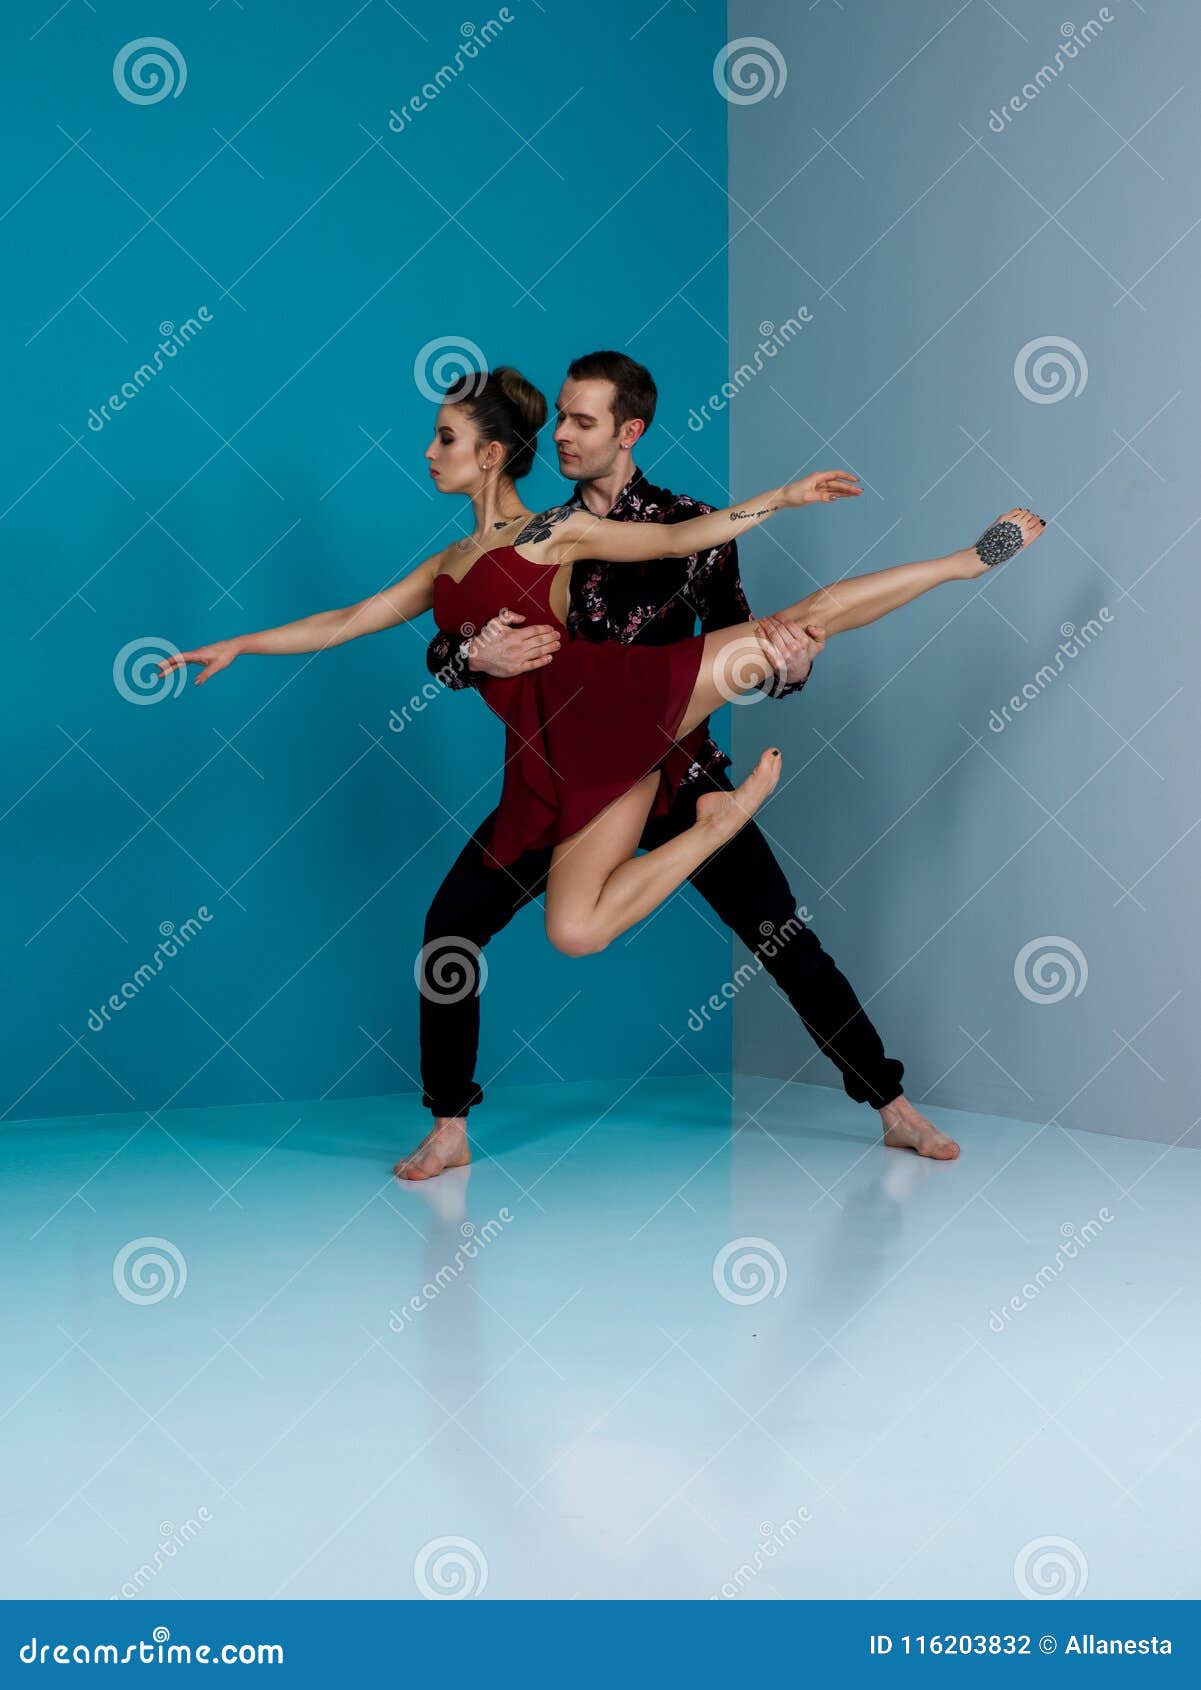 Los Pares Del Bailarín De Ballet Moderno En Pantalones Negros Se Ennegrecen En El Elemento De La Danza Del Interpretativa De Foto de - Imagen de dueto, arte: 116203832